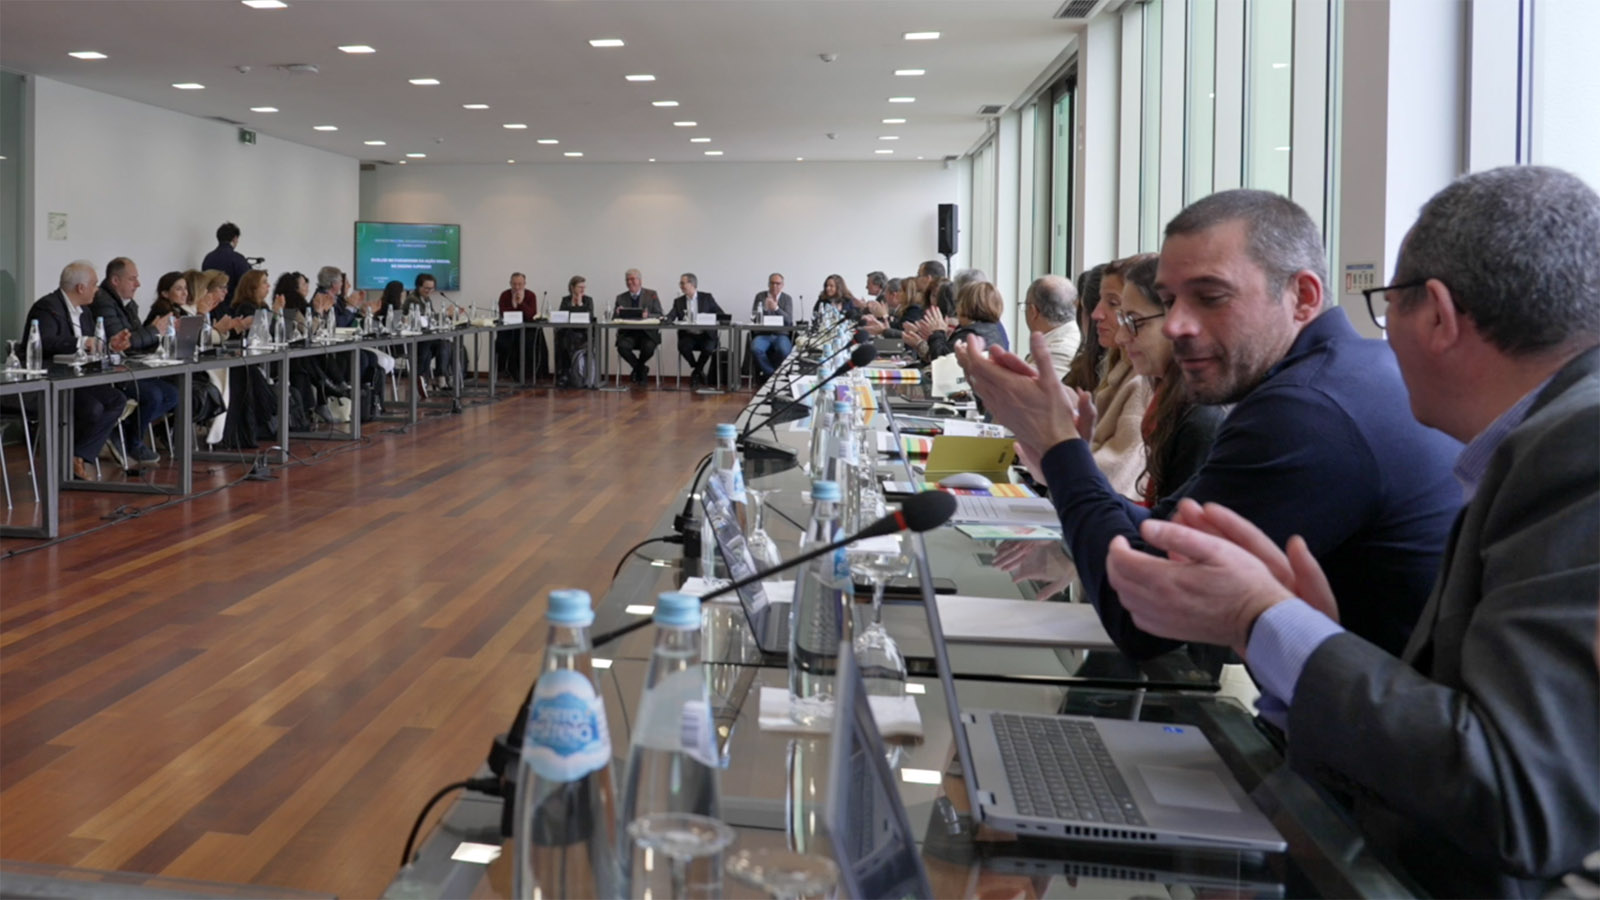 O futuro da Ação Social no Ensino Superior foi a debate na U.Porto